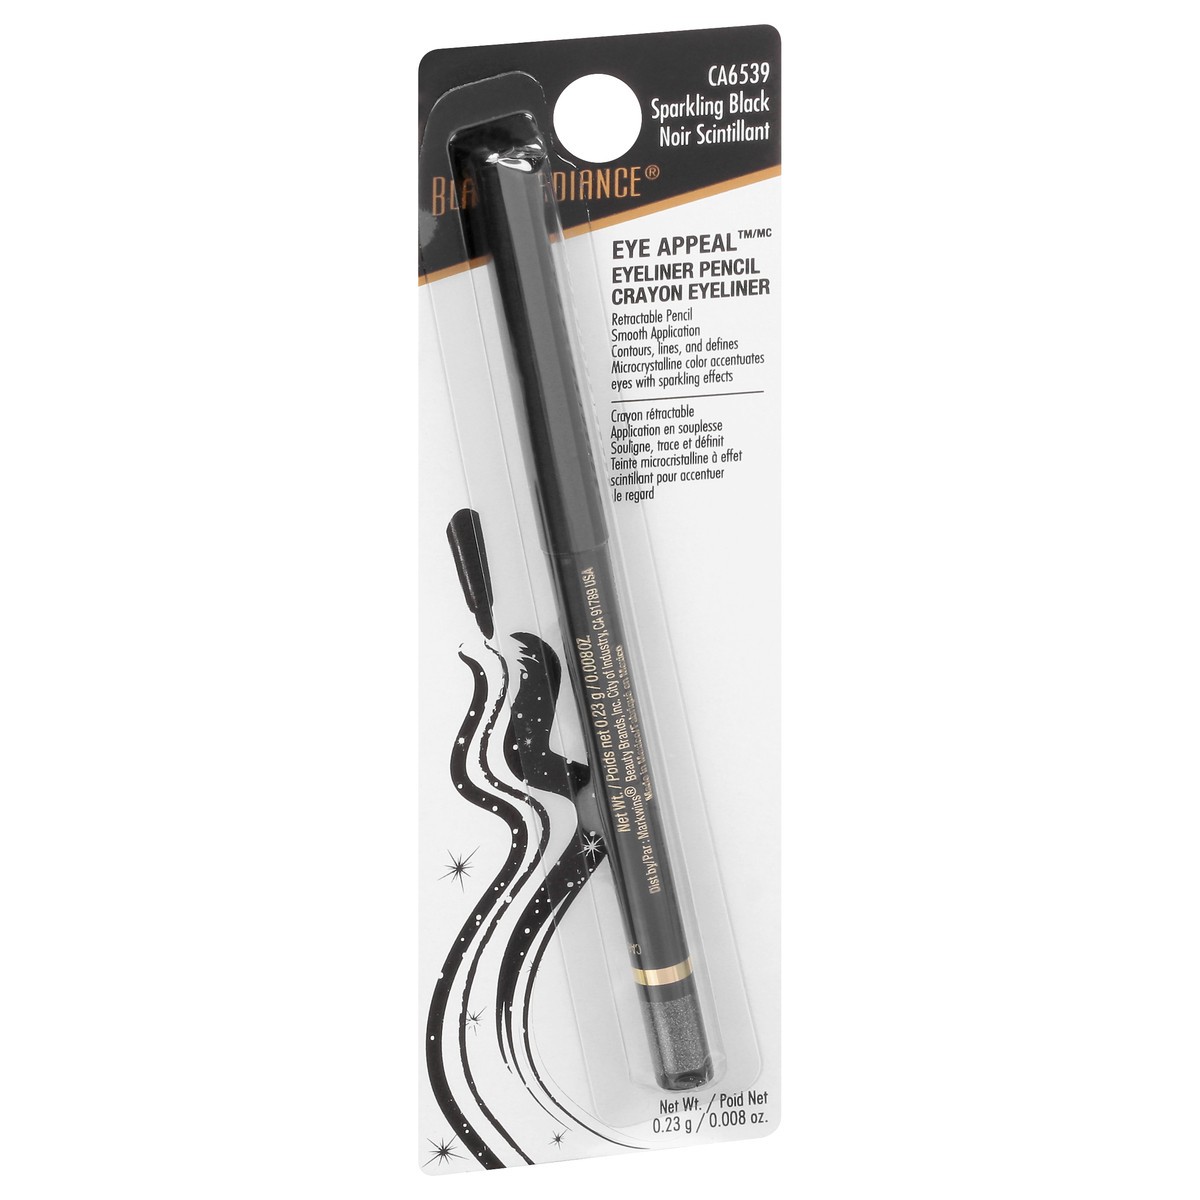 slide 2 of 12, Black Radiance Eye Appeal Sparkling Black CA6539 Eyeliner Pencil 0.23 gr, 0.23 g